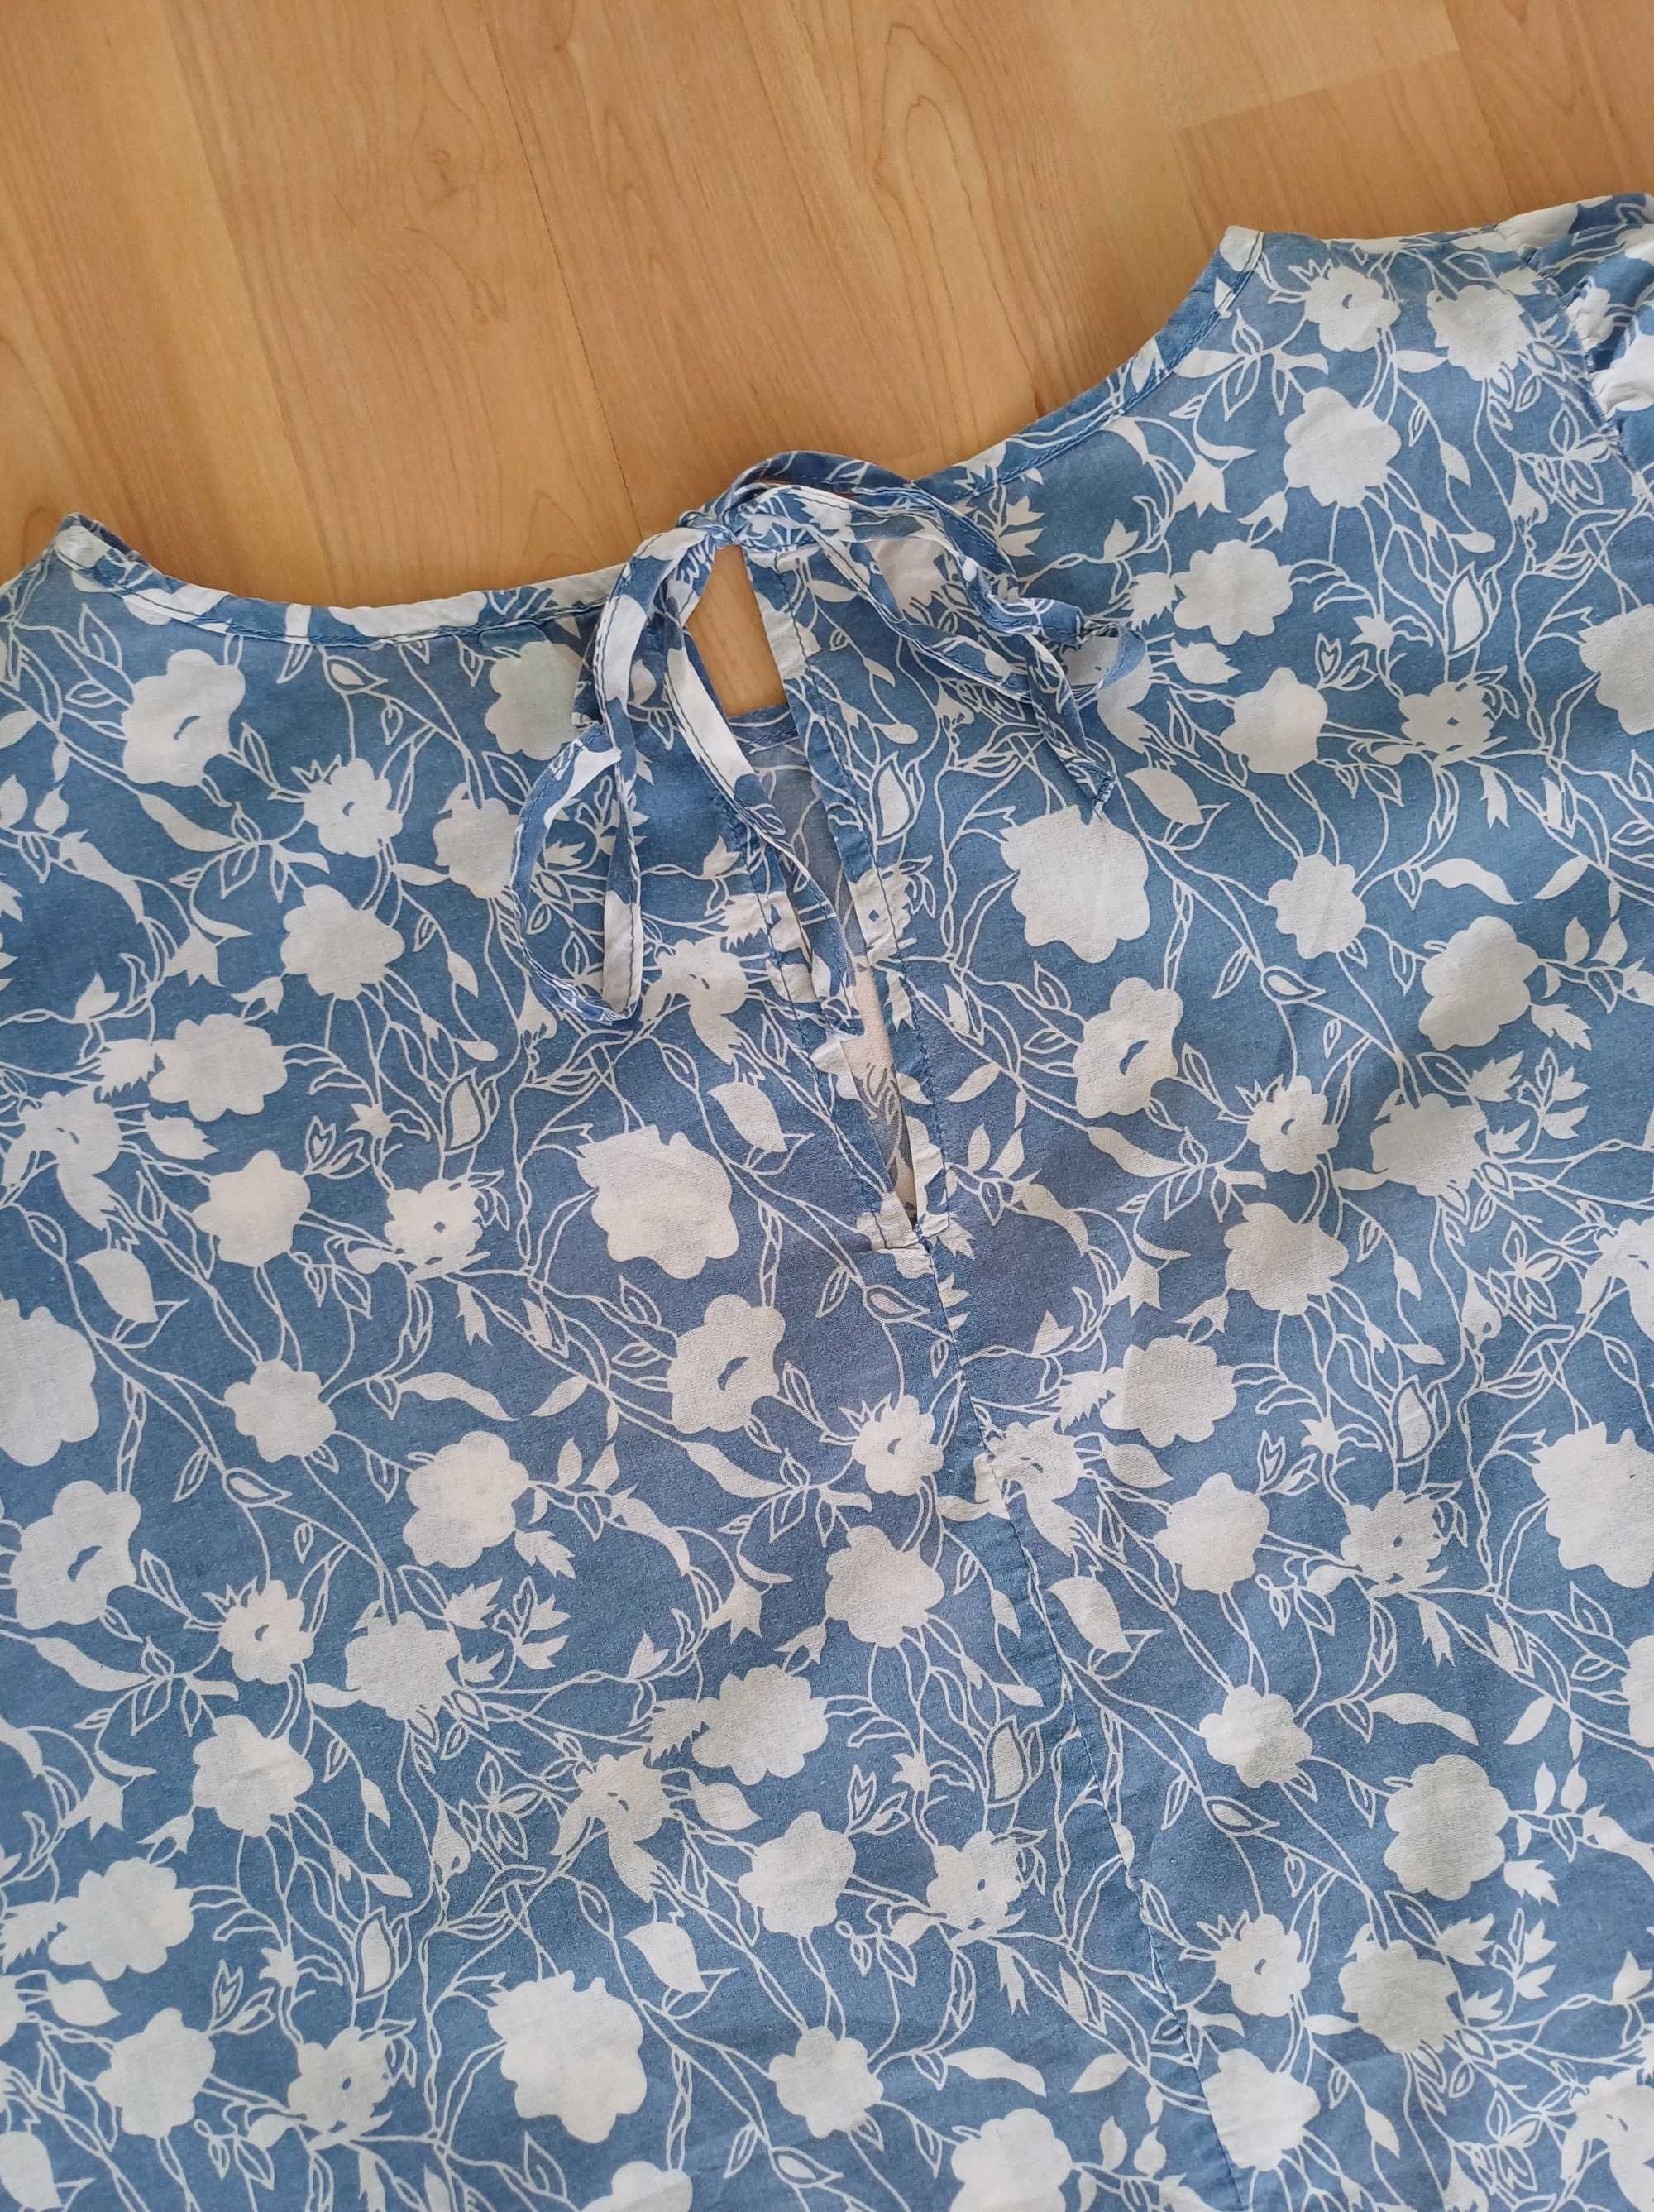 Bluzka damska niebieska biała na krótki rękawek bawełna M/38 S/36